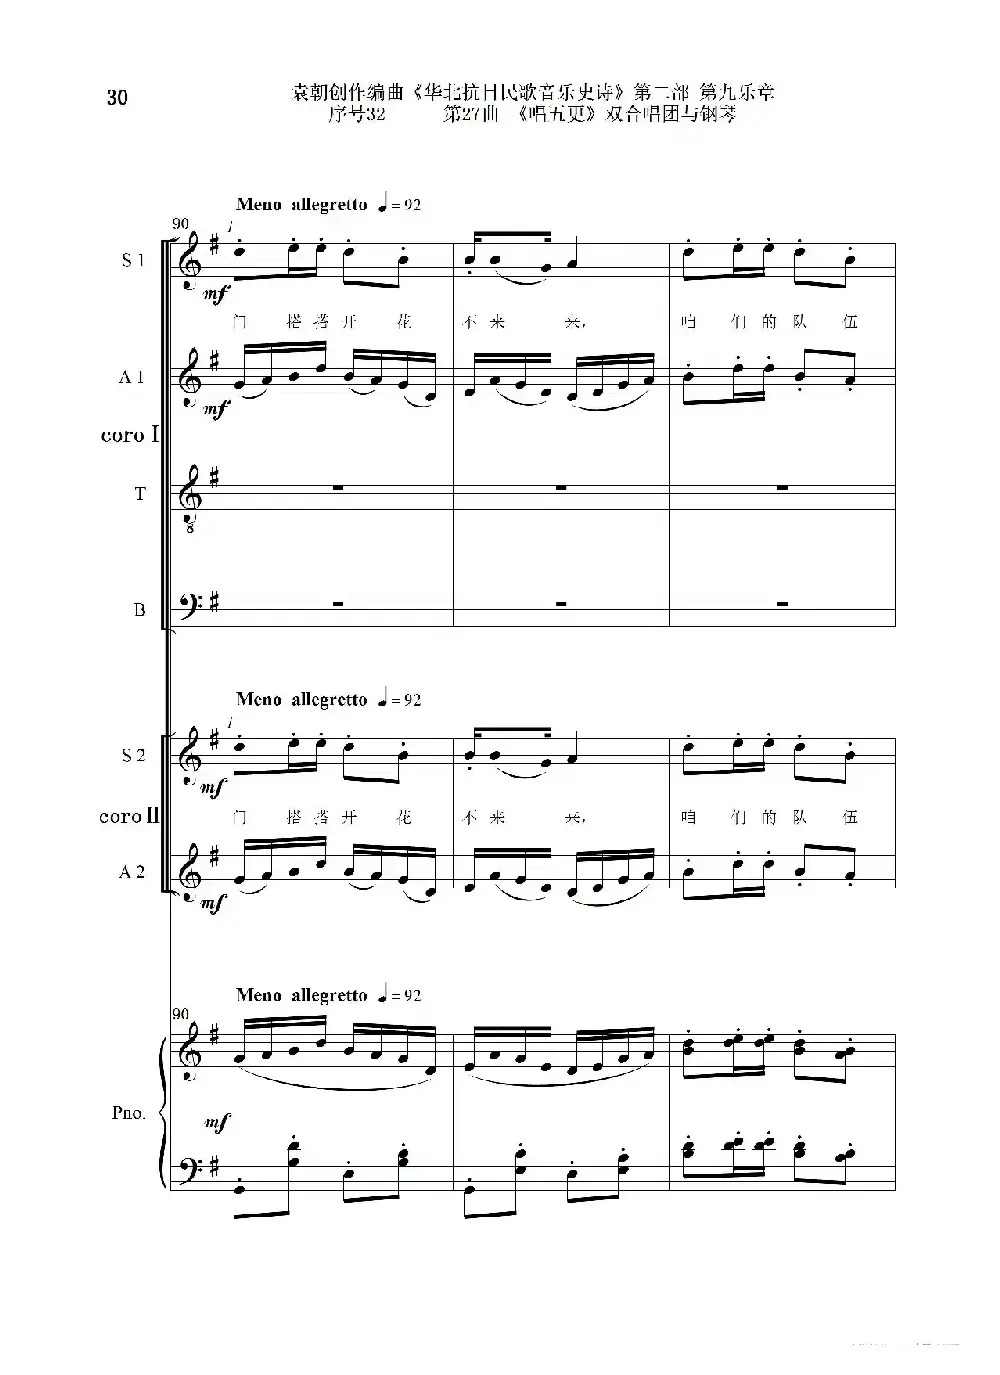 序号32第27曲《唱五更》双合唱团与钢琴